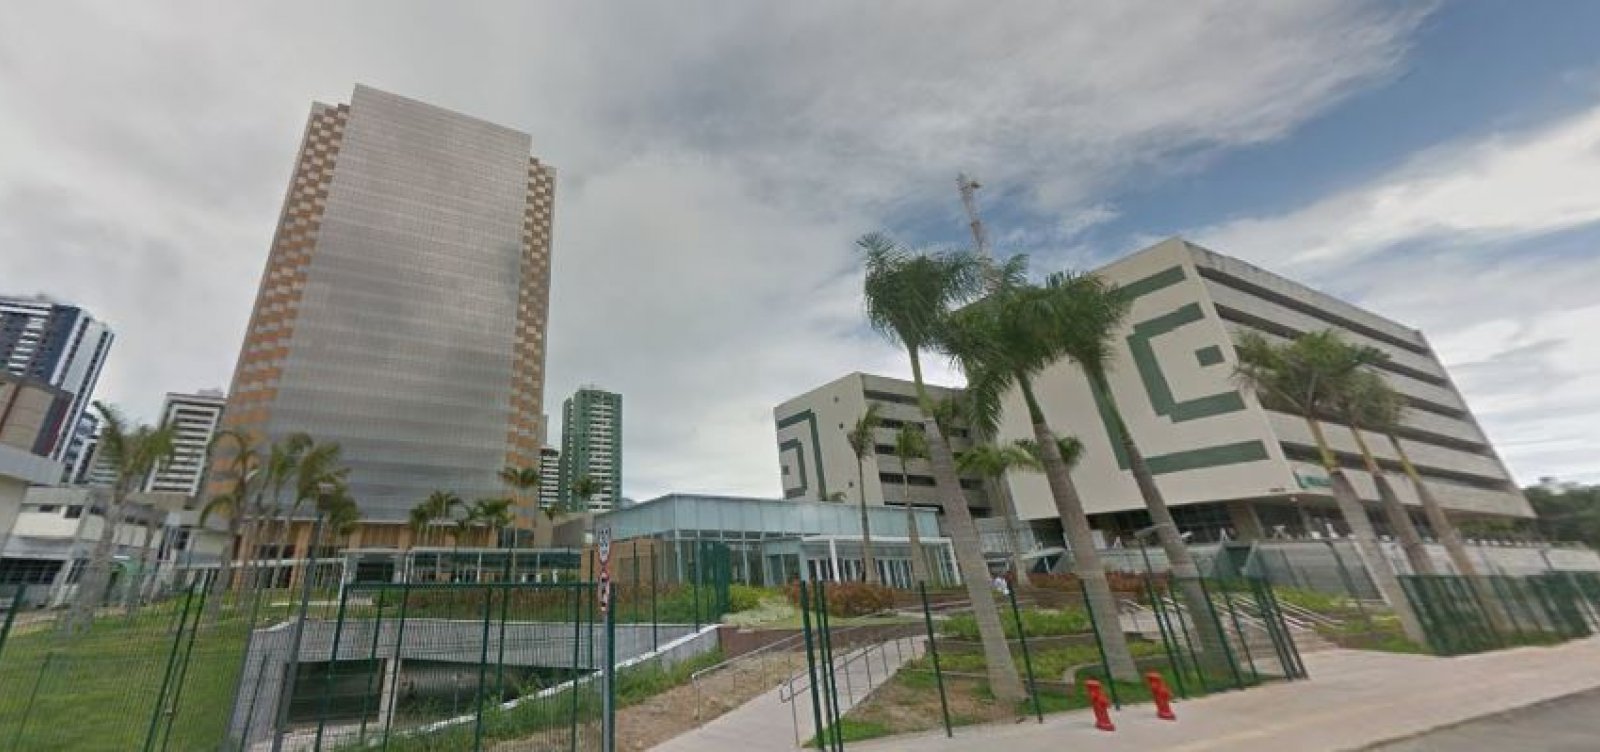 Desocupação de imóvel da Petrobras deve demitir 2 mil e custar R$ 1 bi em multa, diz sindicato